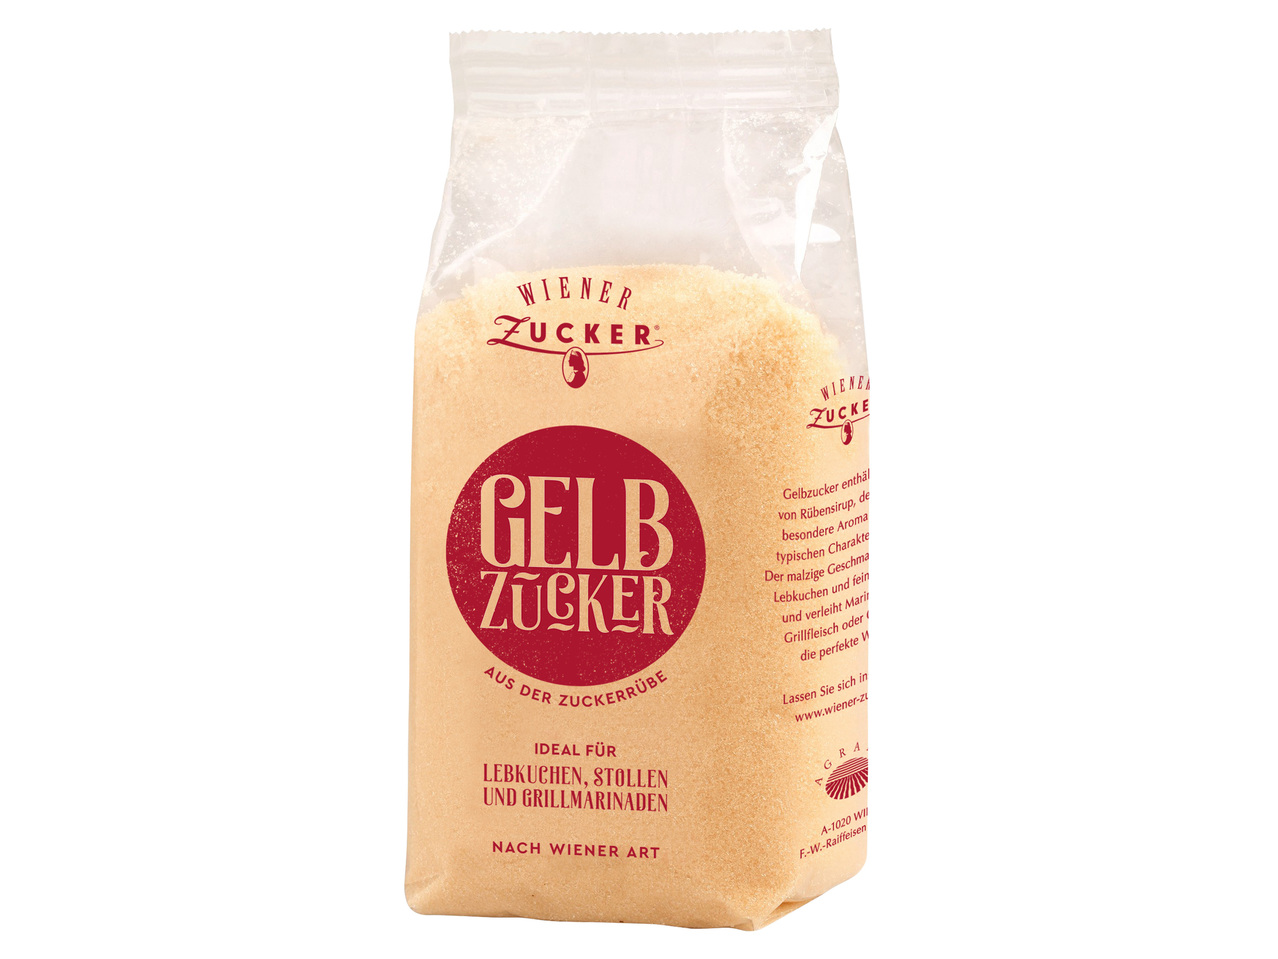 WIENER ZUCKER Gelb-Zucker